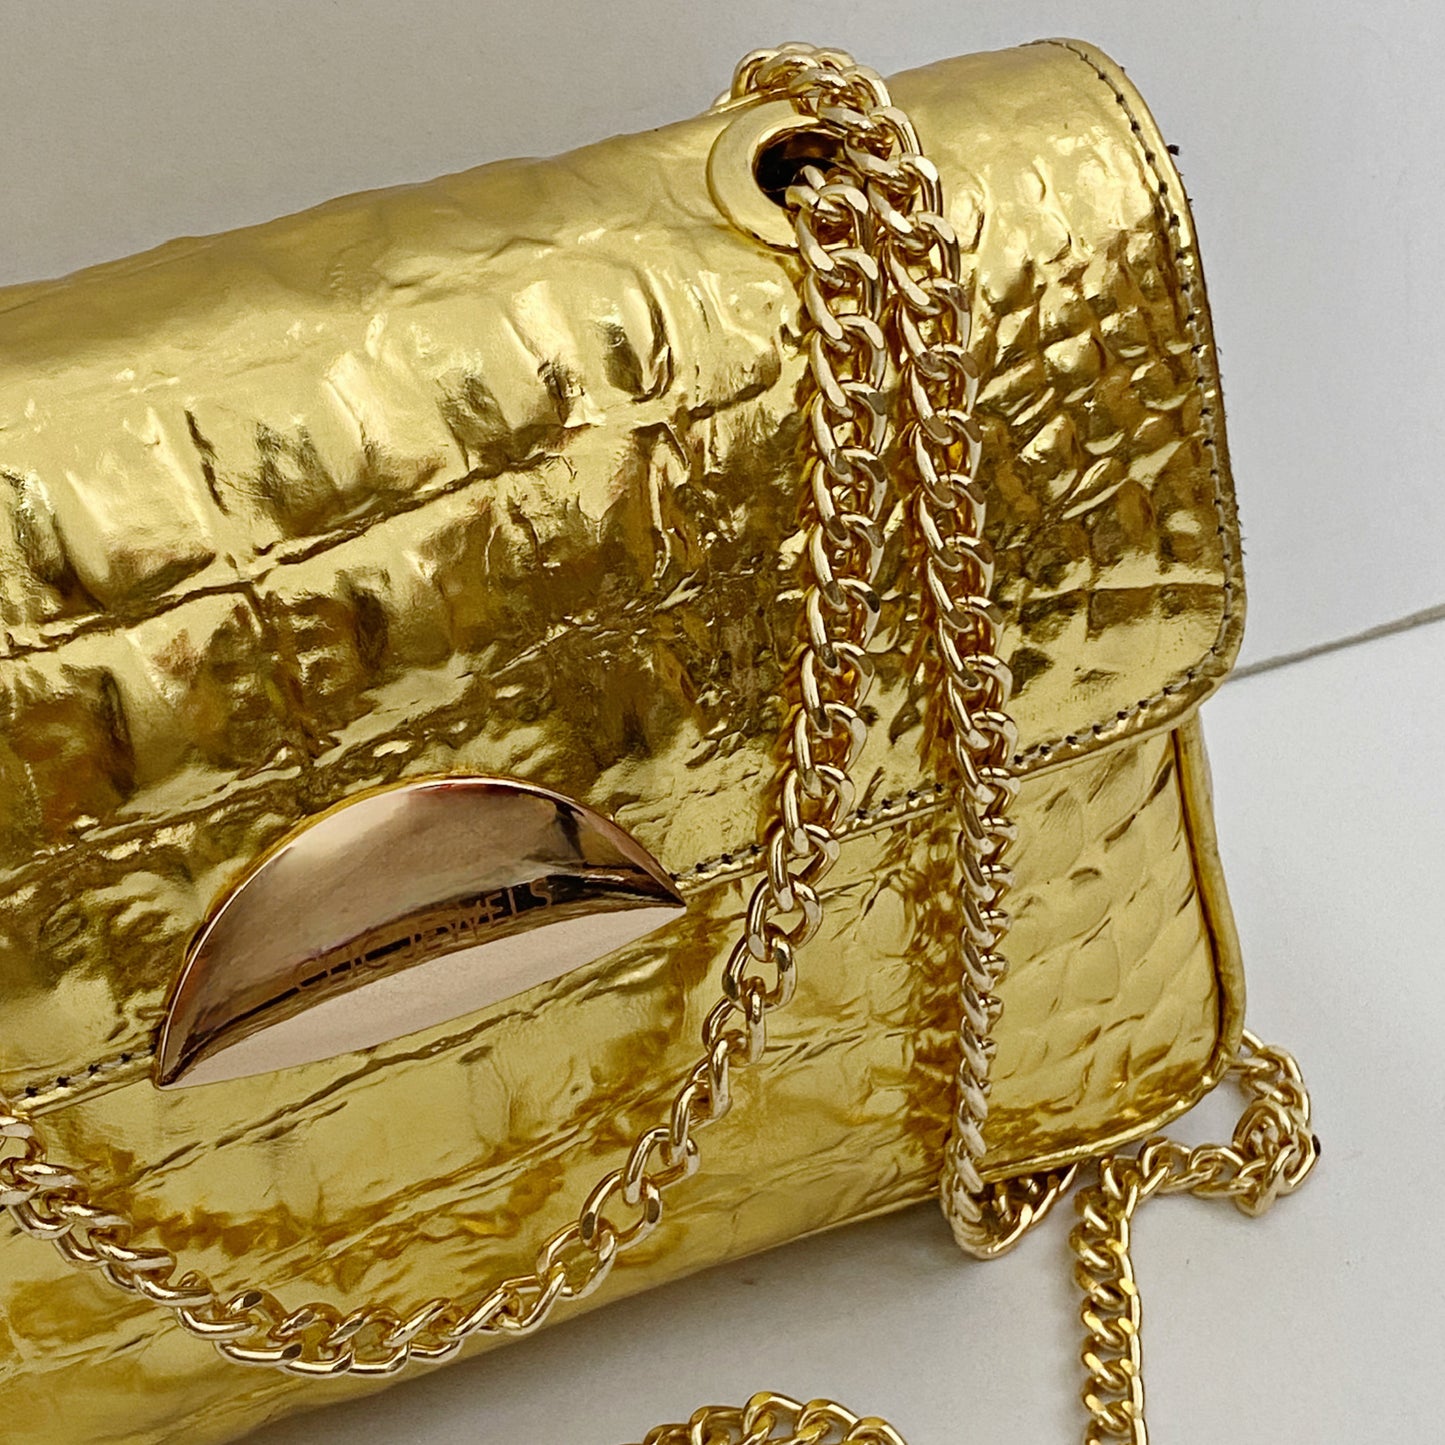 NEIRA MINI (gold croco genuine leather)